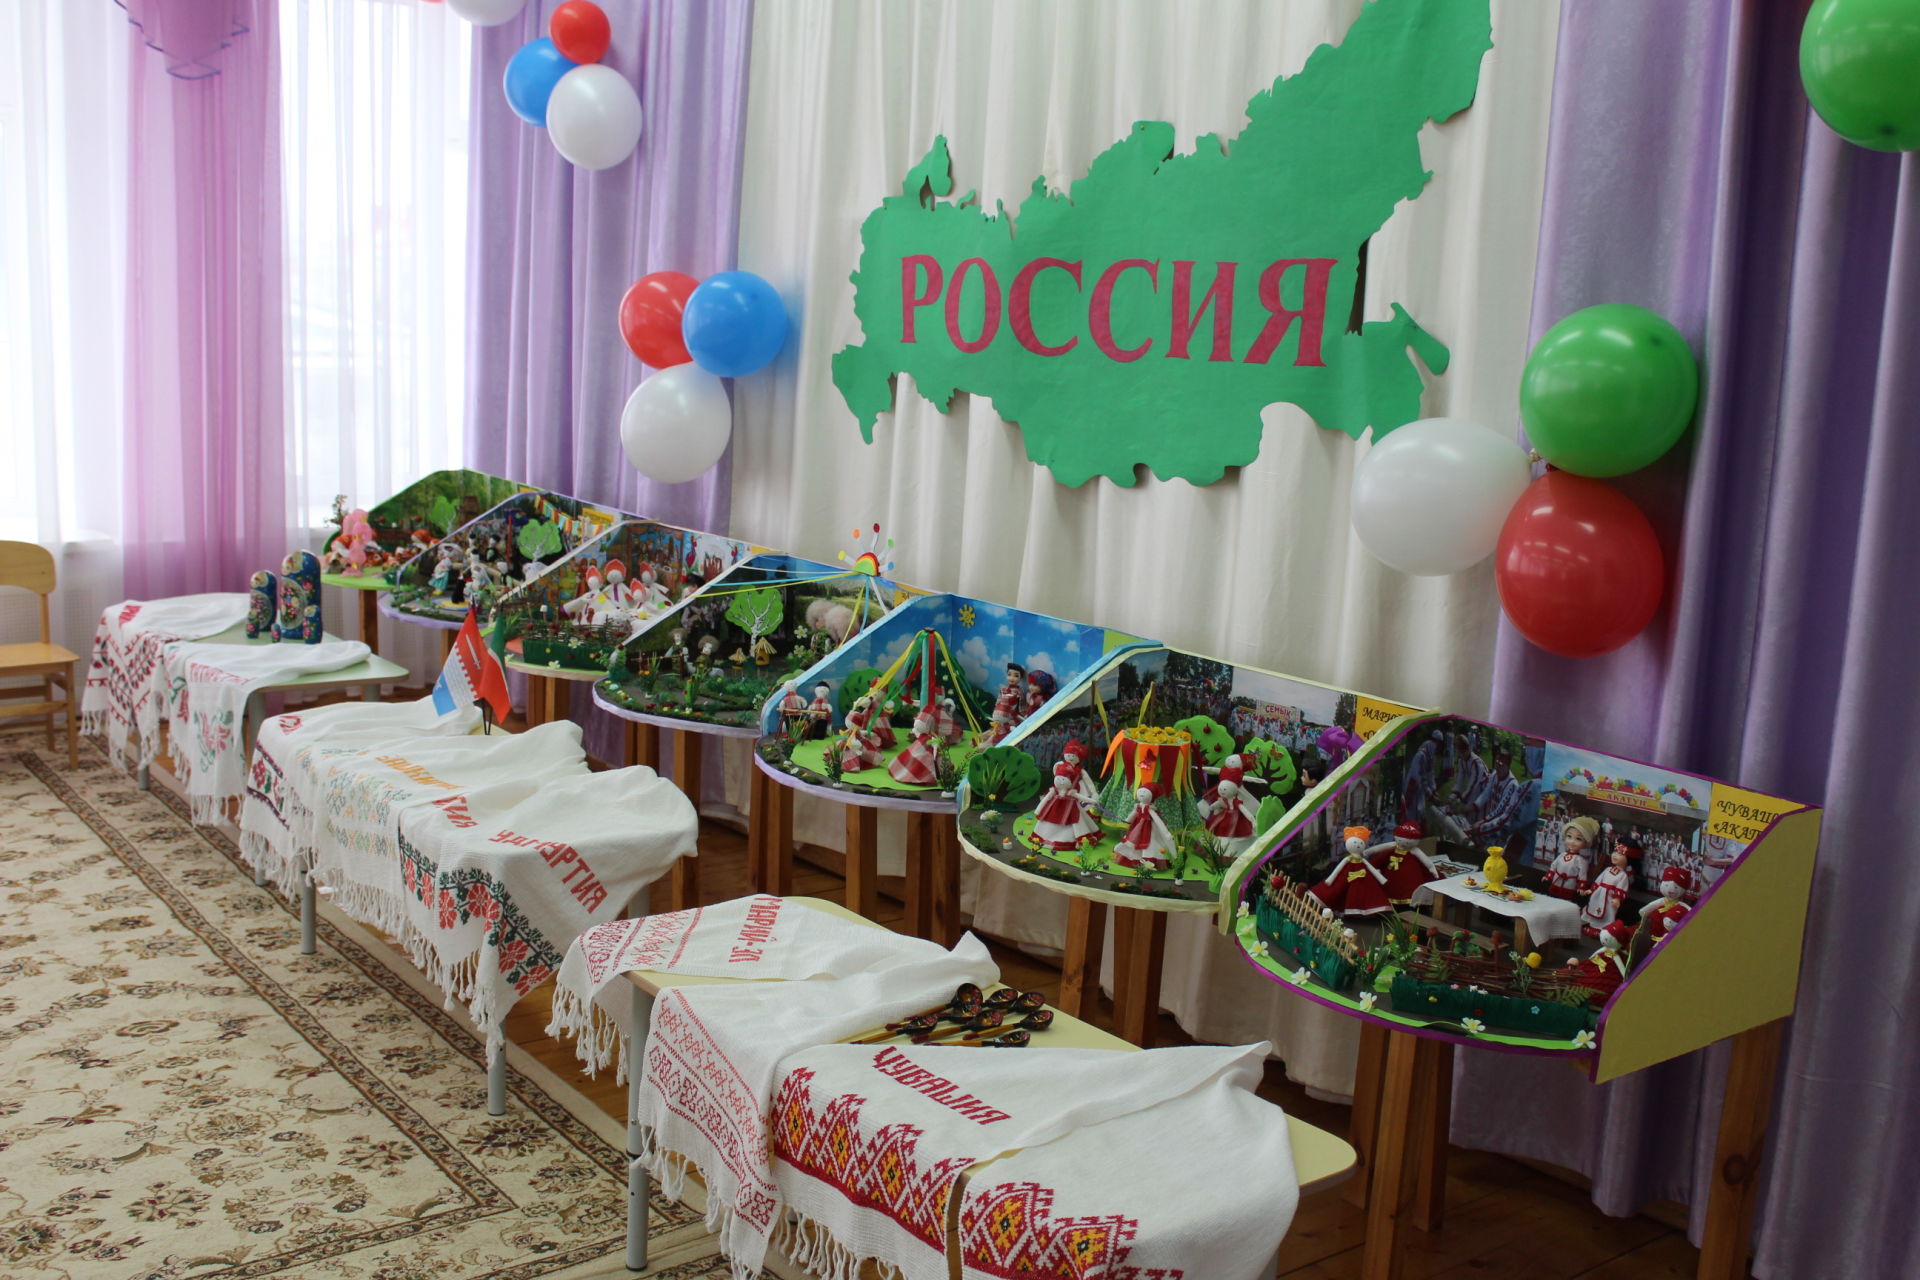 Депутат Госсовета РТ Камиль Нугаев посетил школы и детсады Новошешминского района